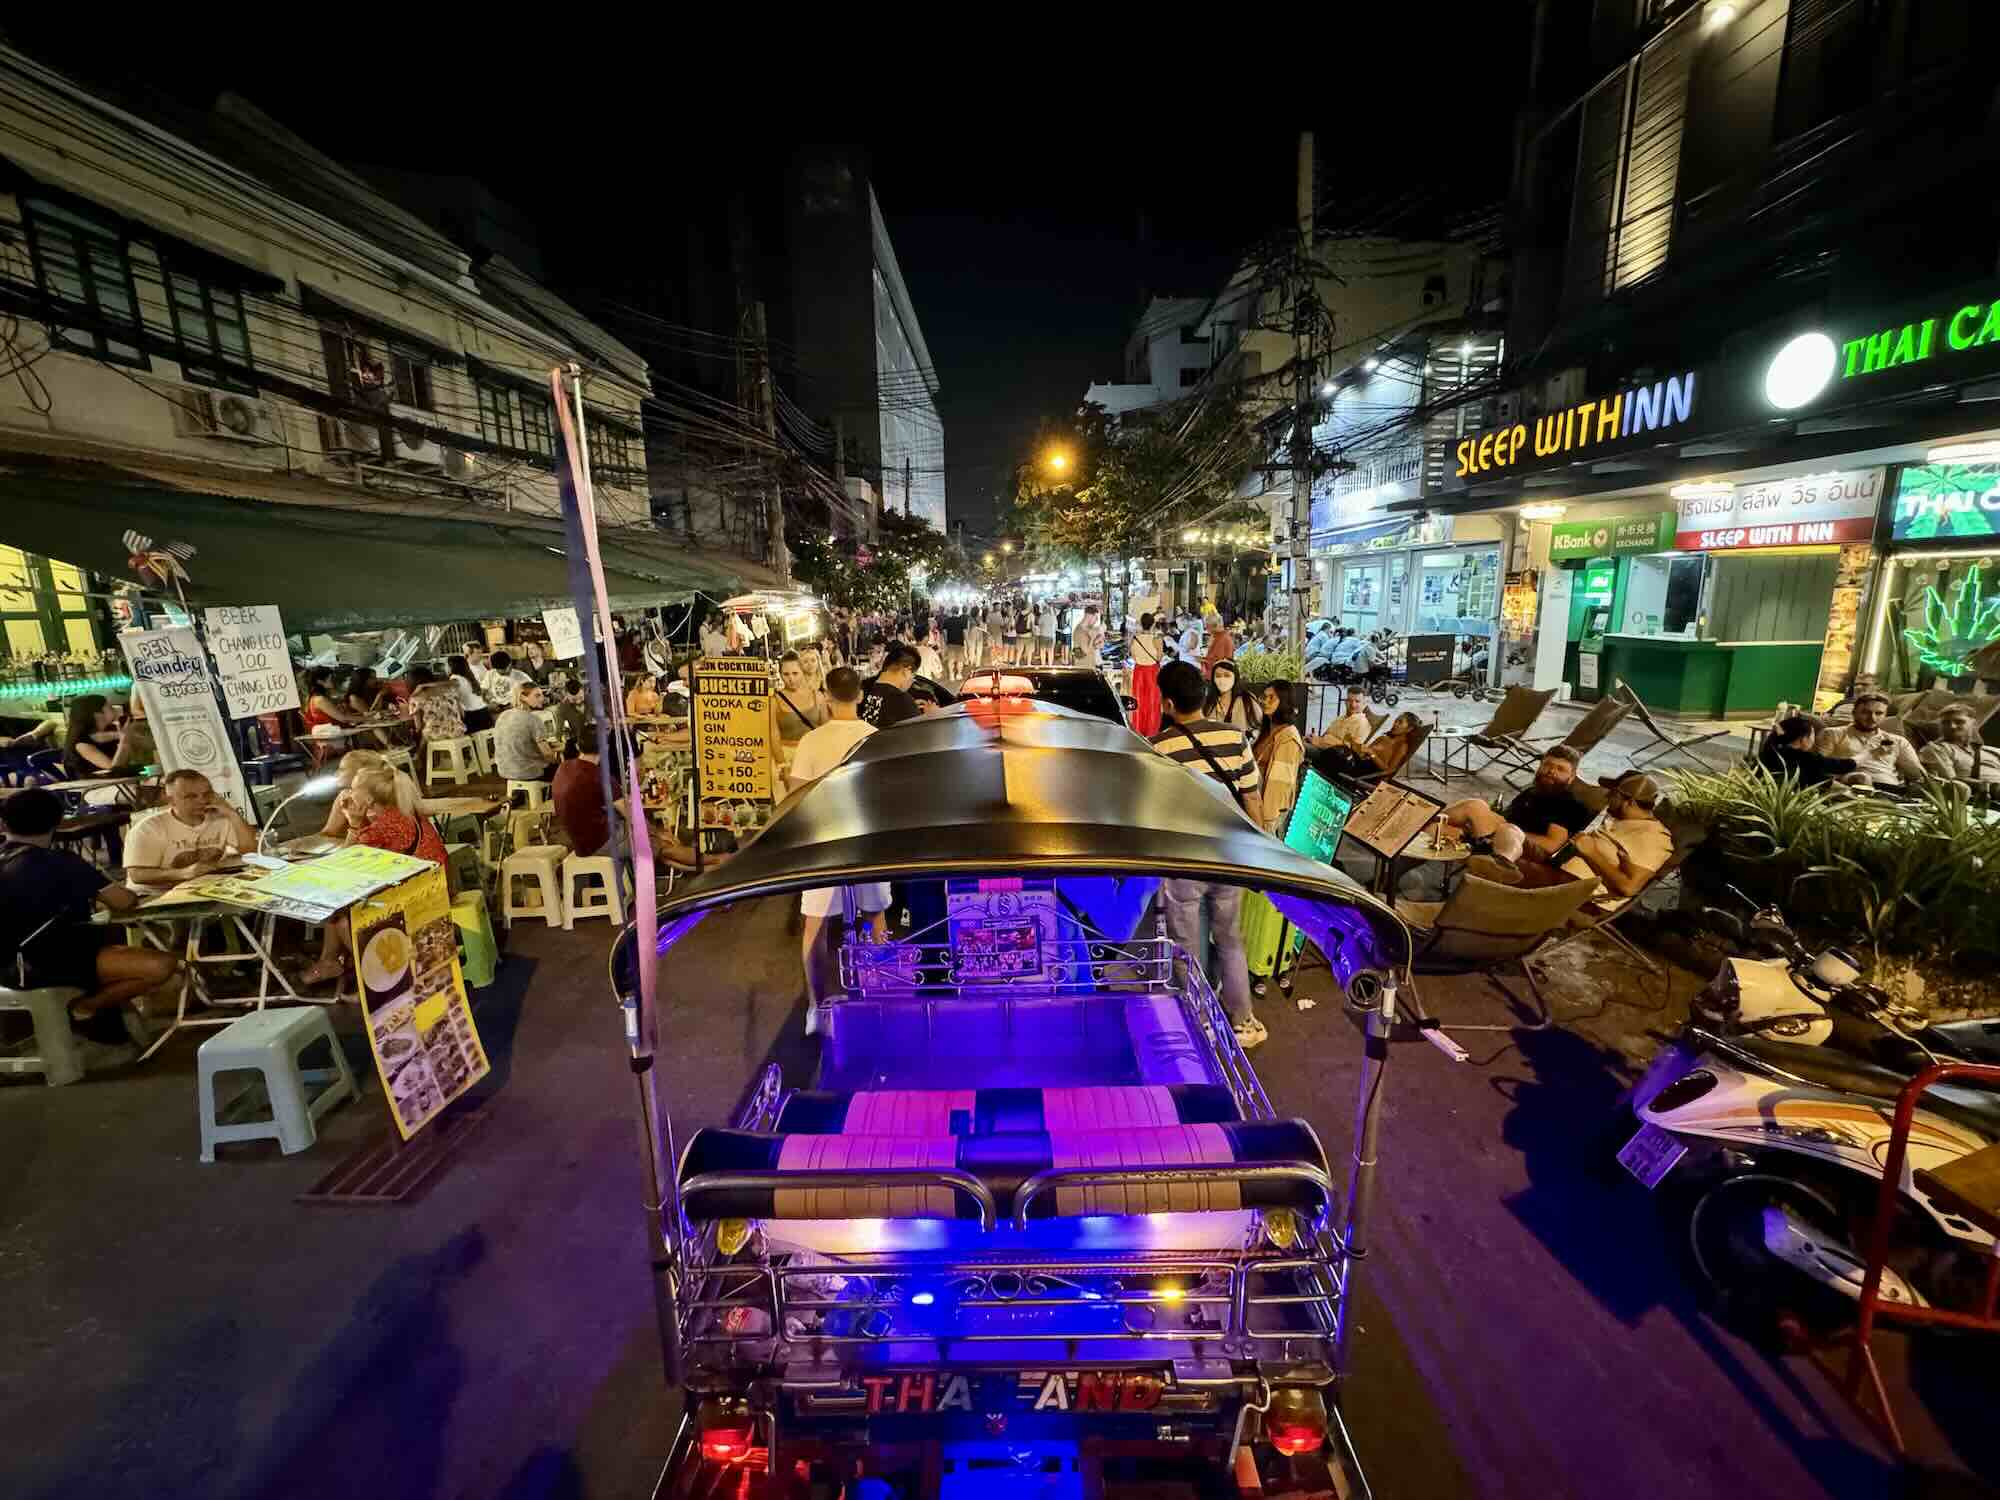 Dietrofront, la Thailandia non introdurrà la tassa di soggiorno